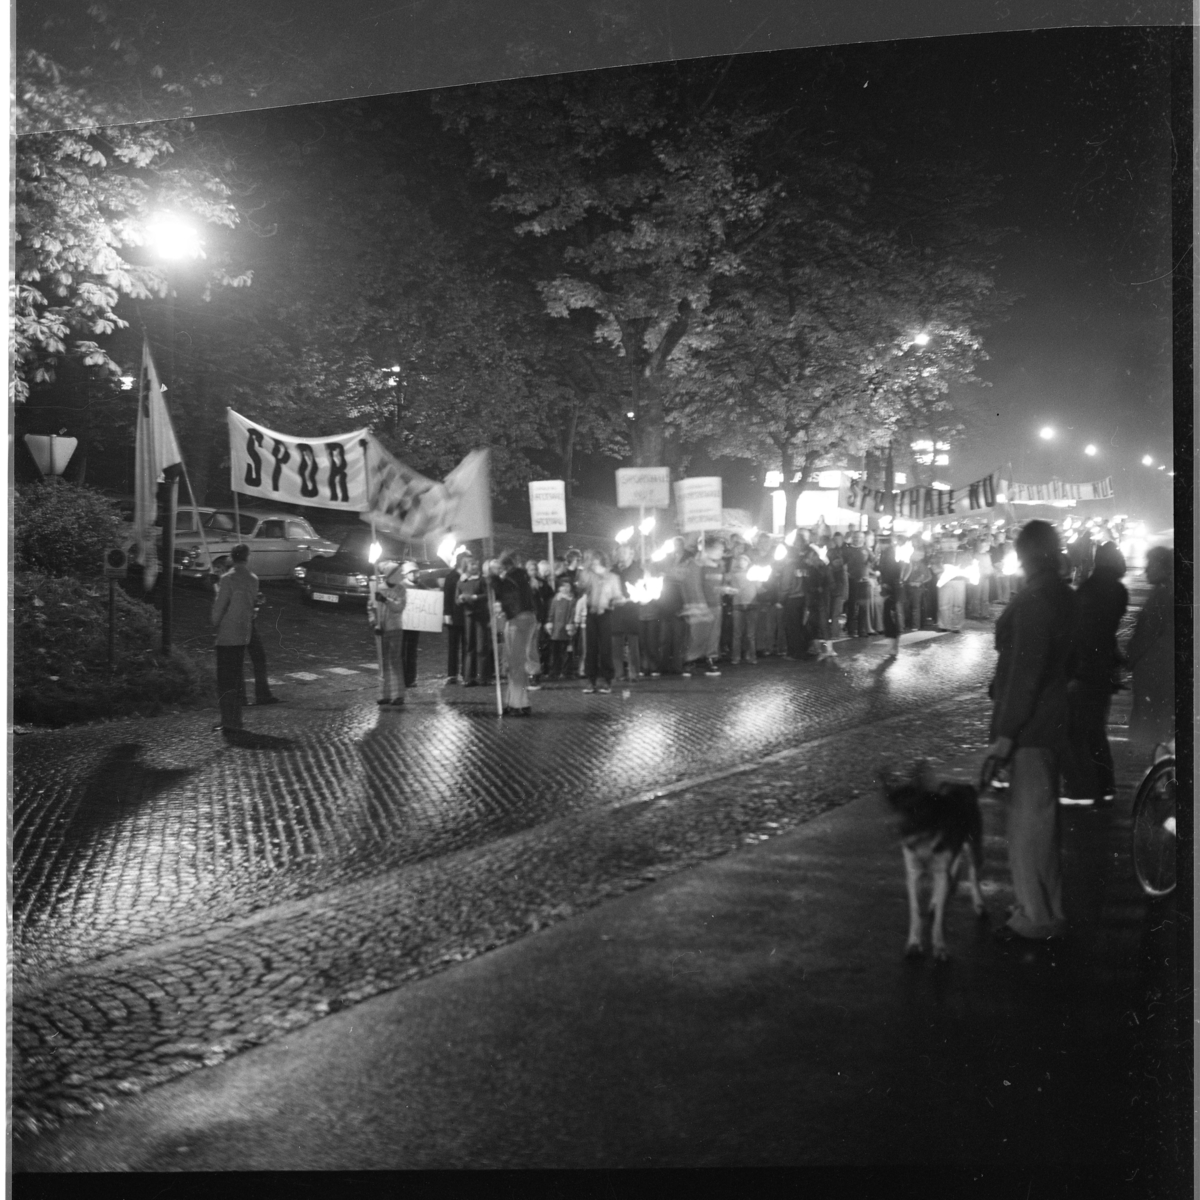 Ungdomar och vuxna med banderoll och plakat om "Sporthall" på Brahegatan i Gränna. Grännabor demonstrerar för att få en sporthall till Gränna. Det är oktober, mörkt och blött på vägen.